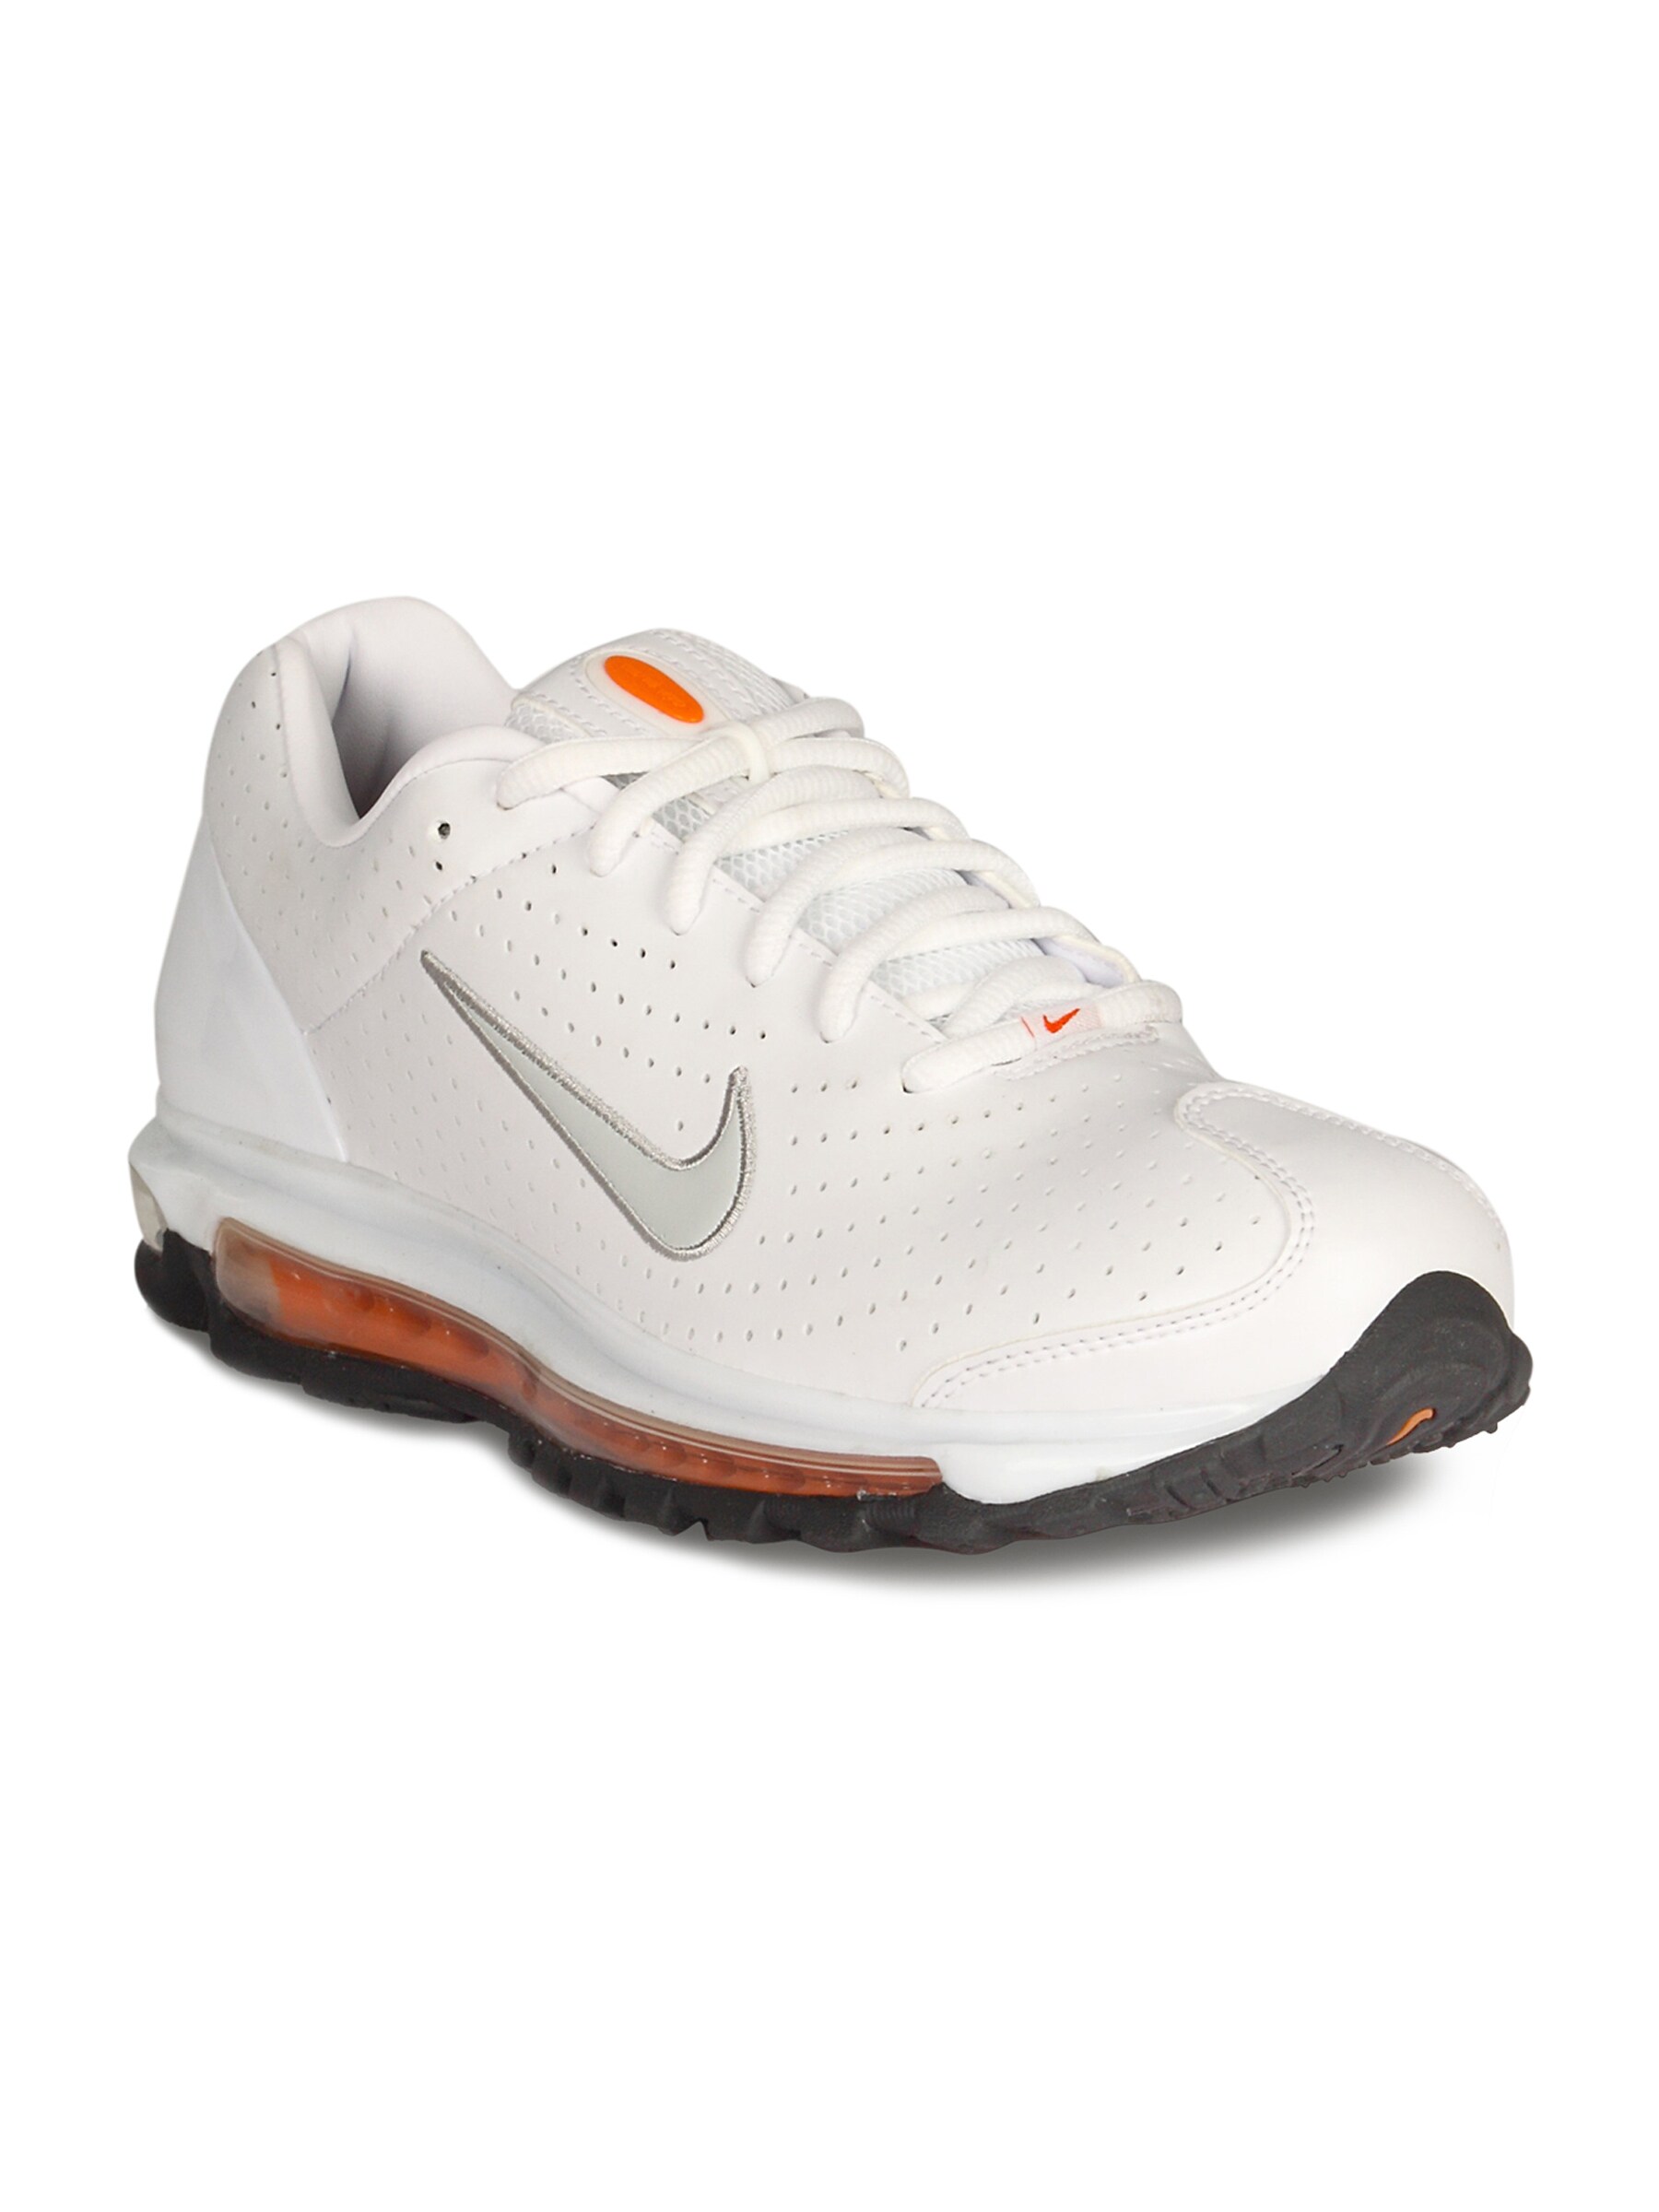 Nike Men's Air Max White Grey Orange Shoe